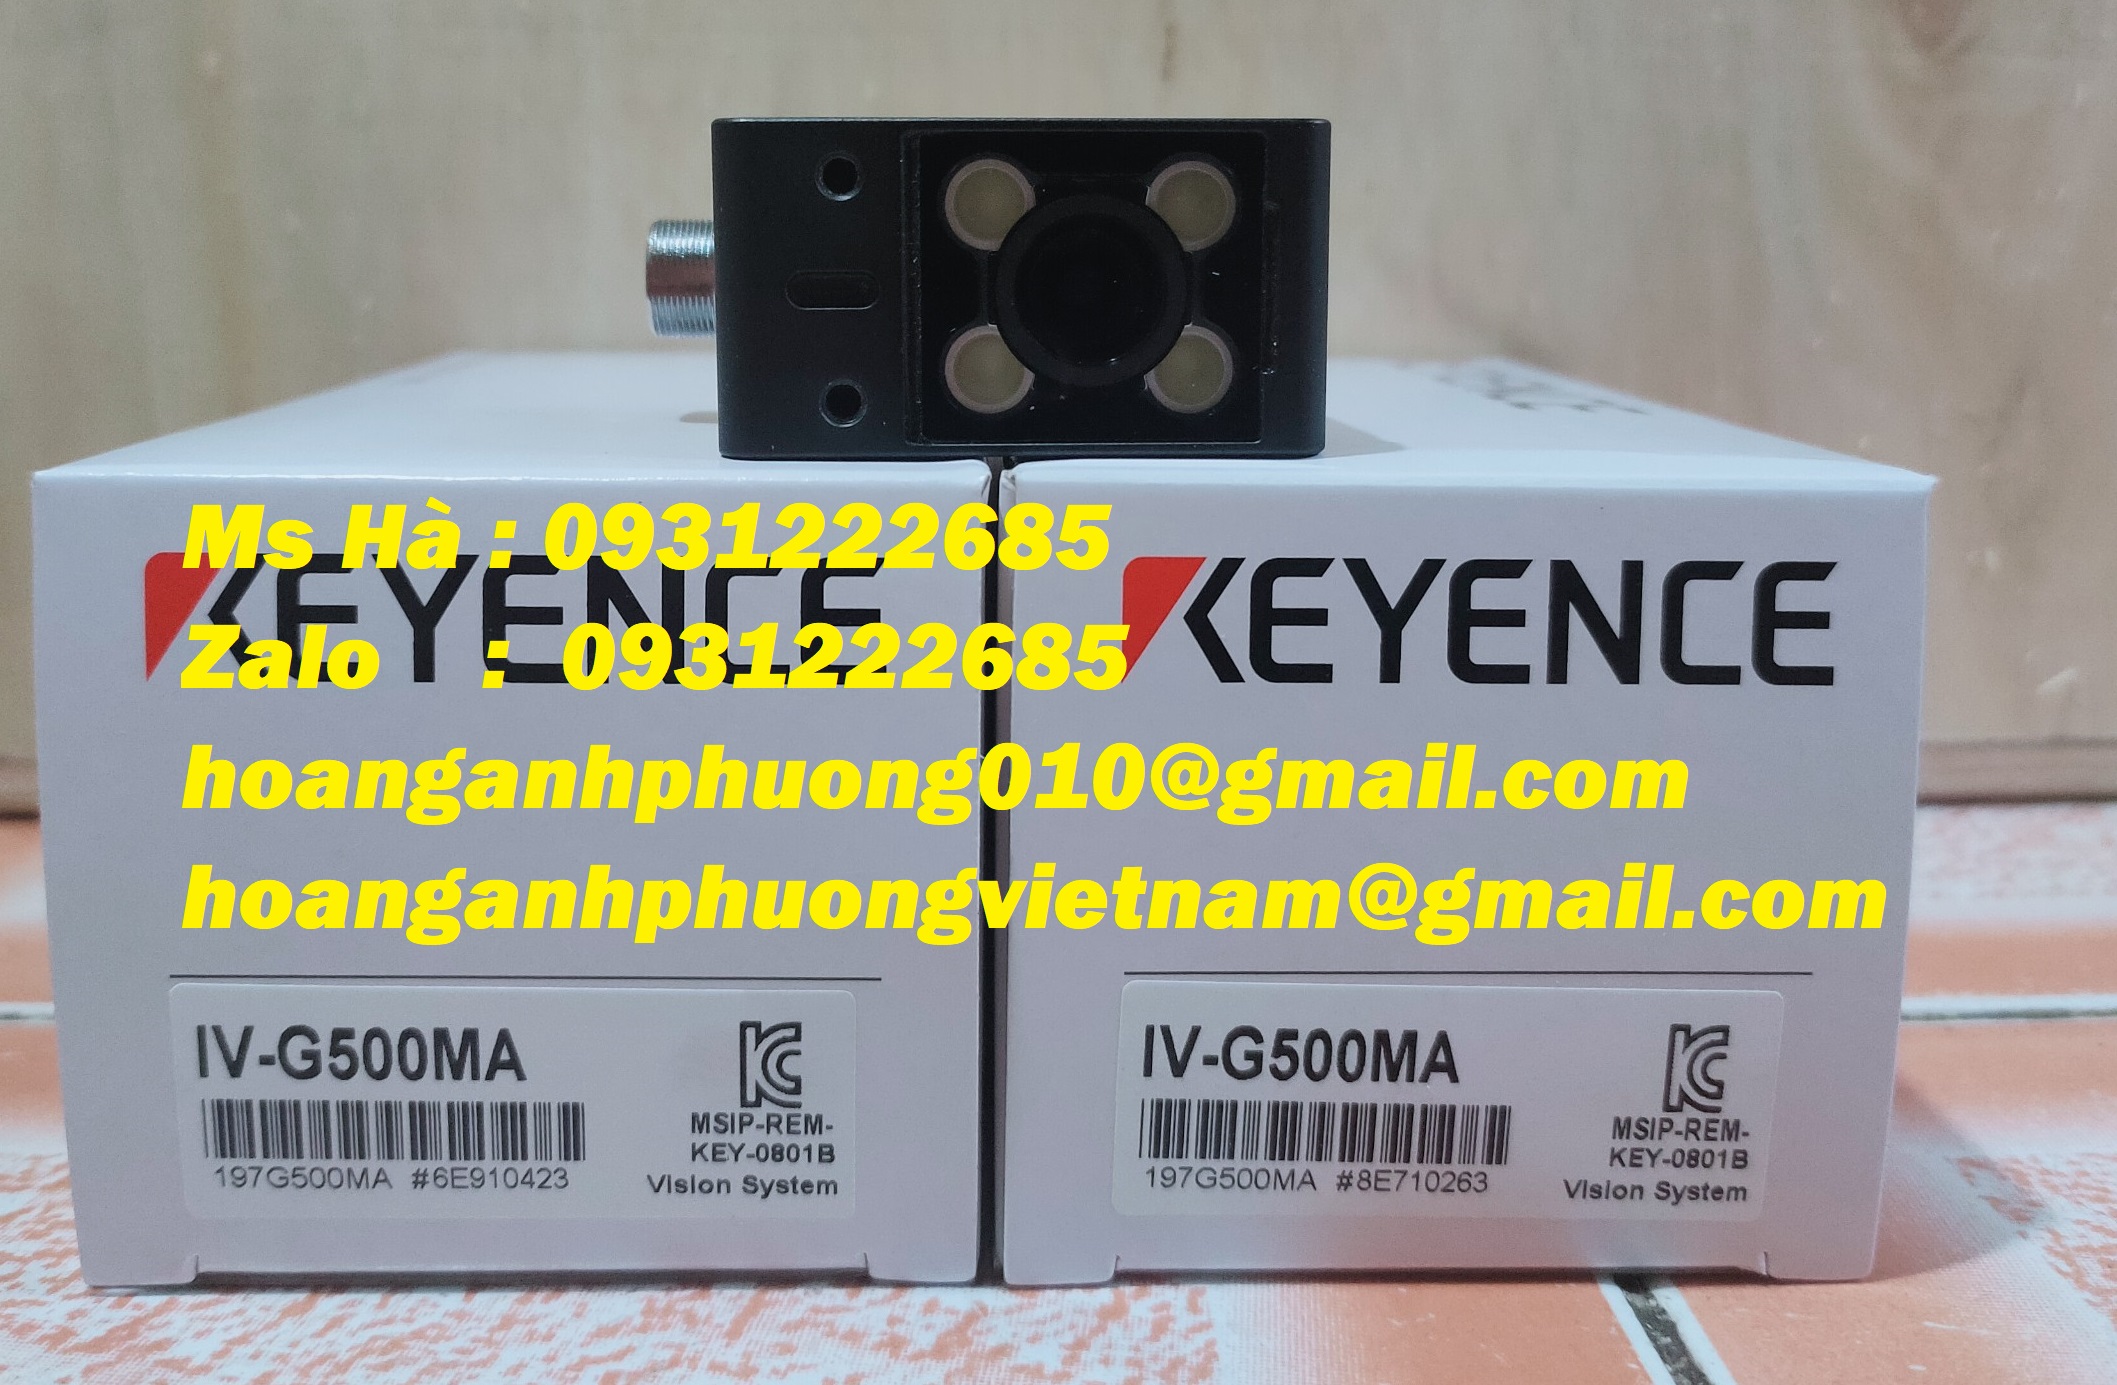 Phân phối trực tiếp IV-G500MA keyence chính hãng 